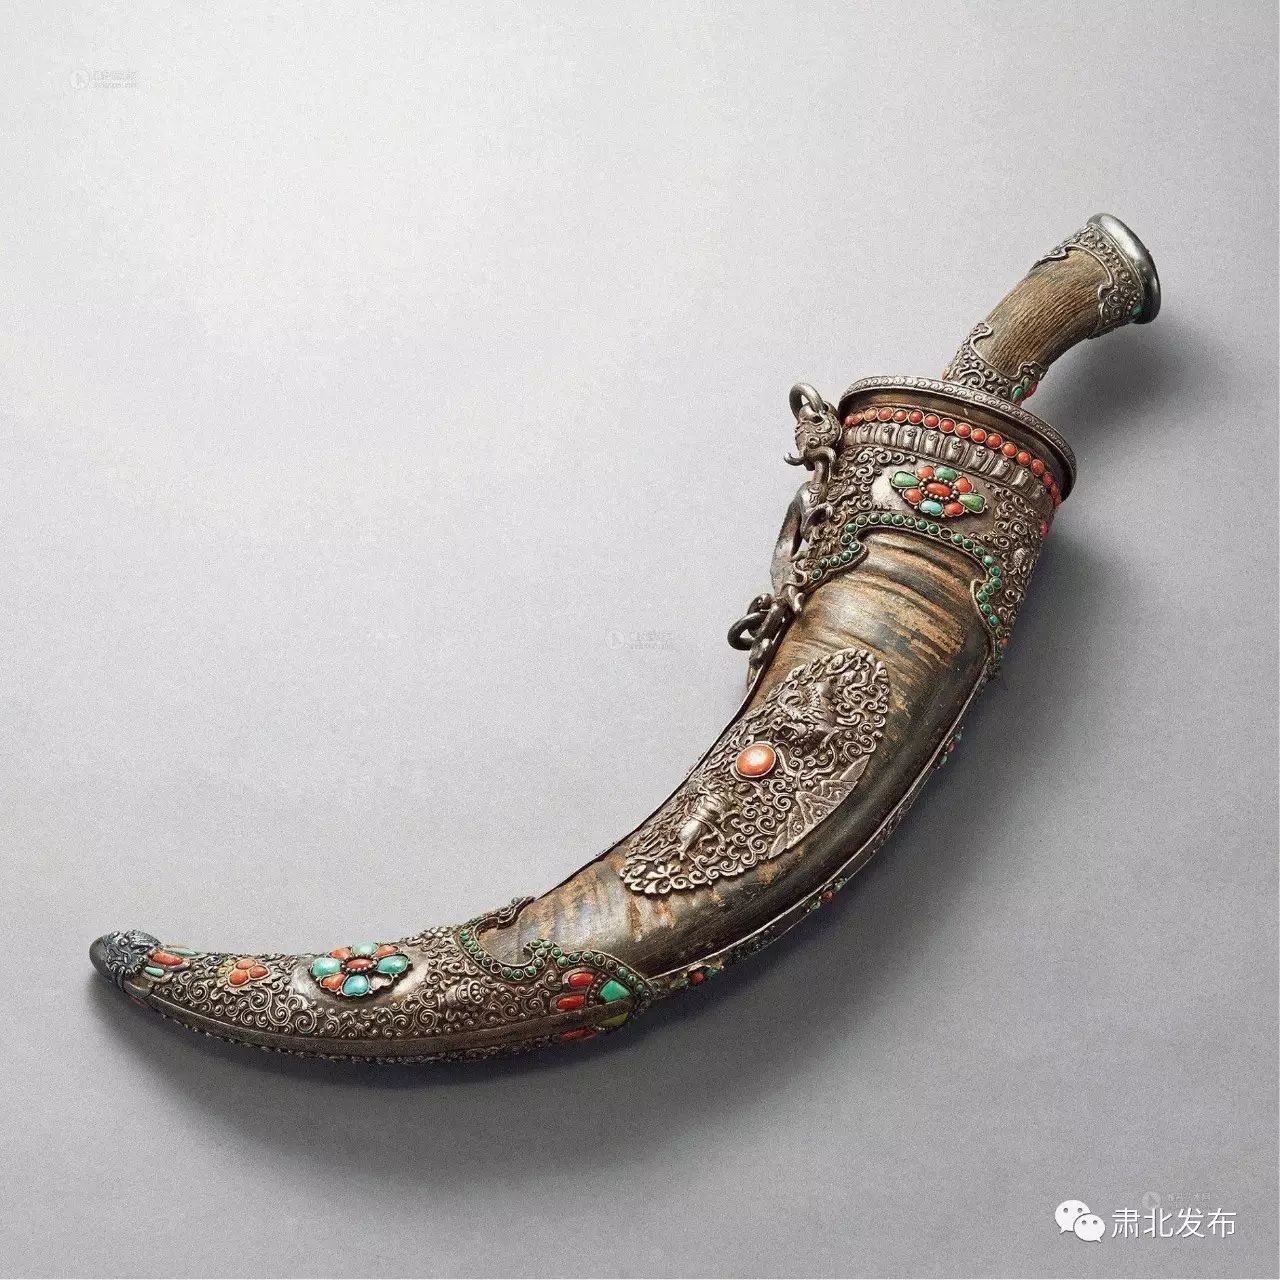 【肃北名片】蒙古刀是蒙古族工艺品中最具代表性的馈赠礼品之一